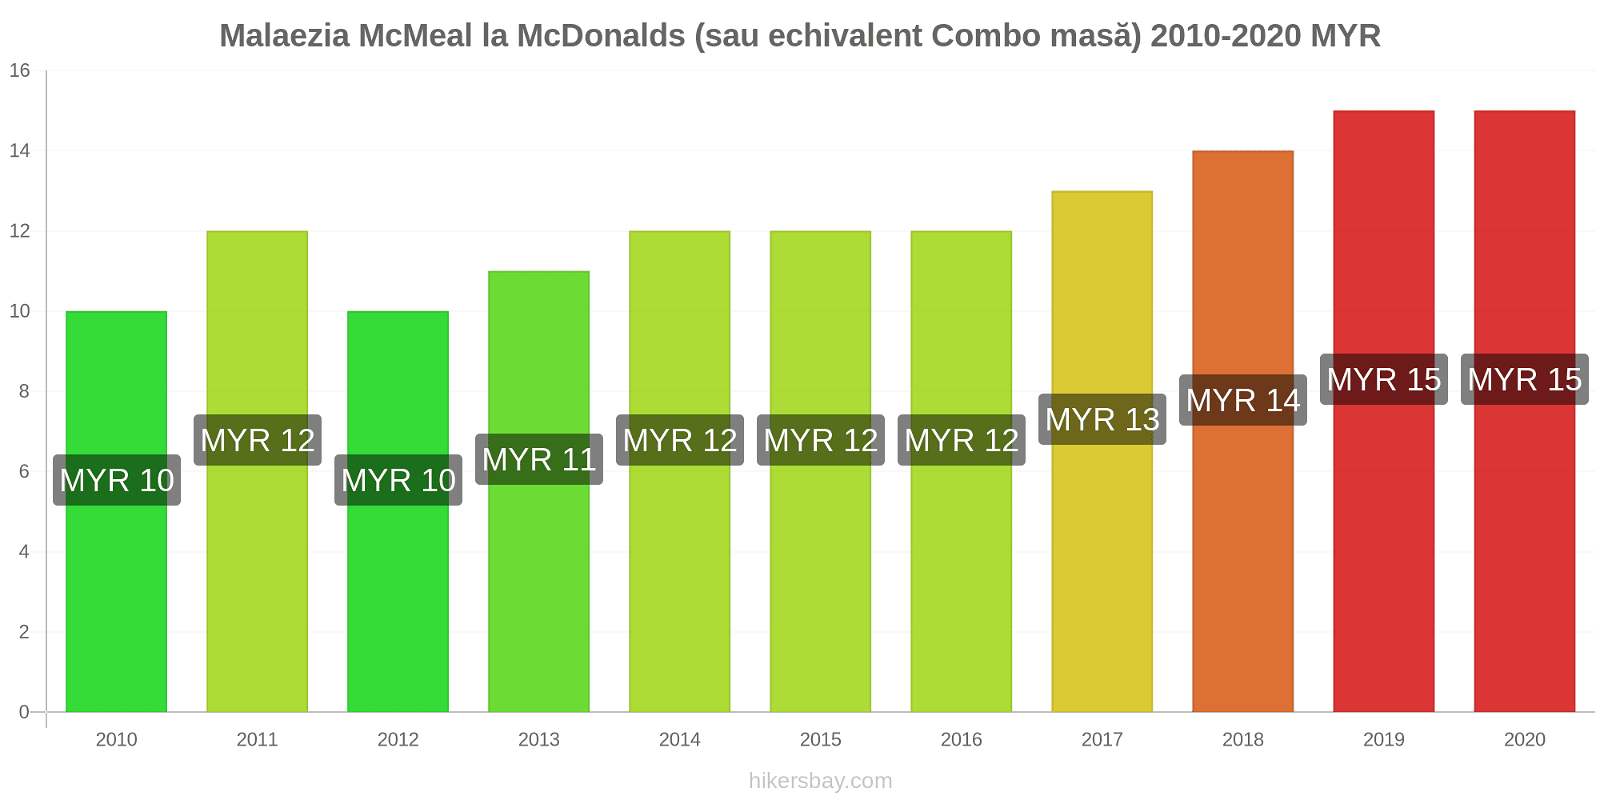 Malaezia modificări de preț McMeal la McDonalds (sau echivalent Combo masă) hikersbay.com